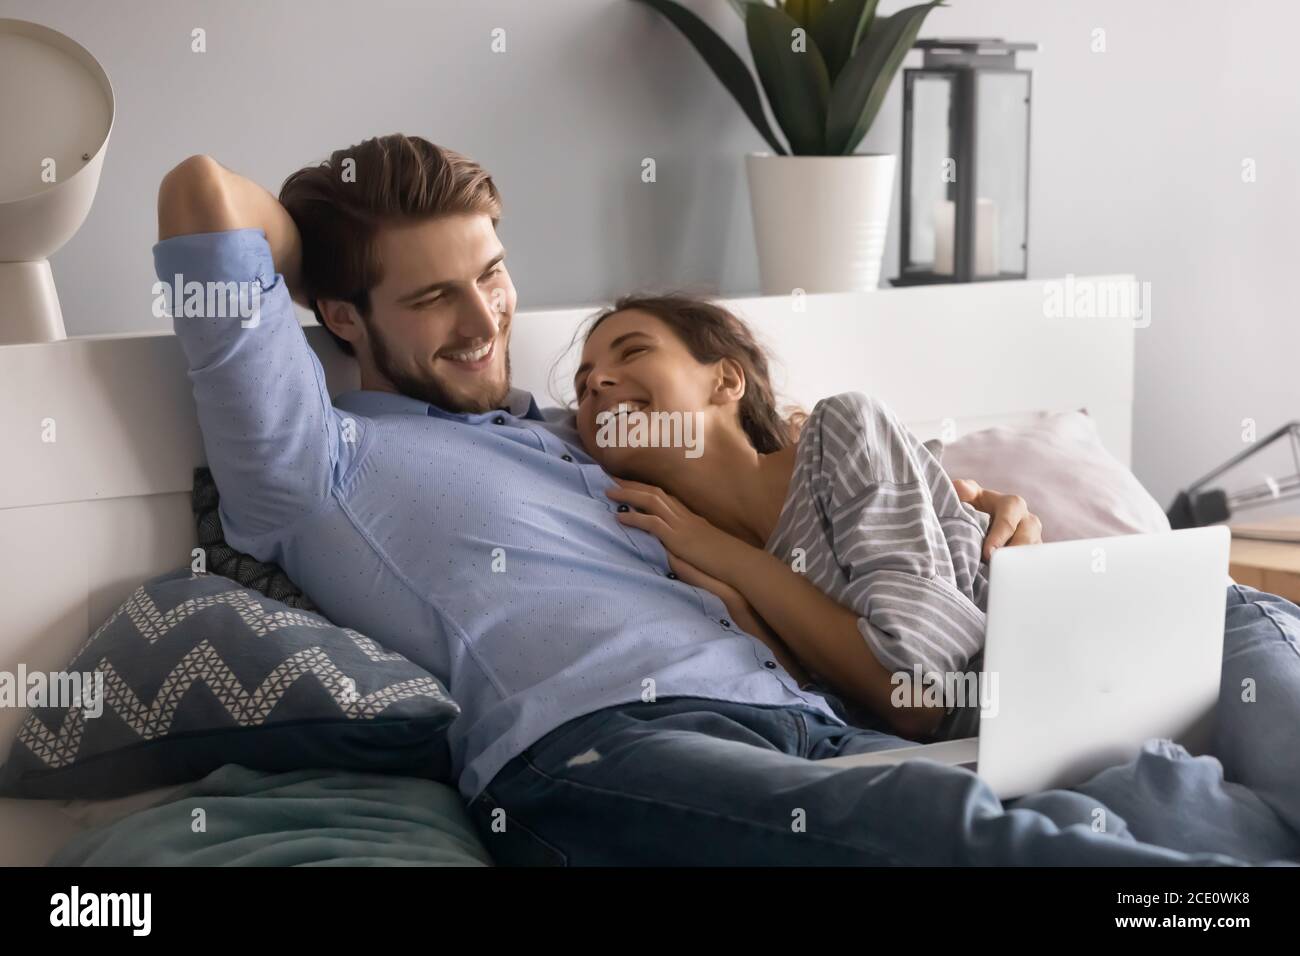 Emotionales junges entspanntes Familienpaar, das beim lustigen Film lacht. Stockfoto